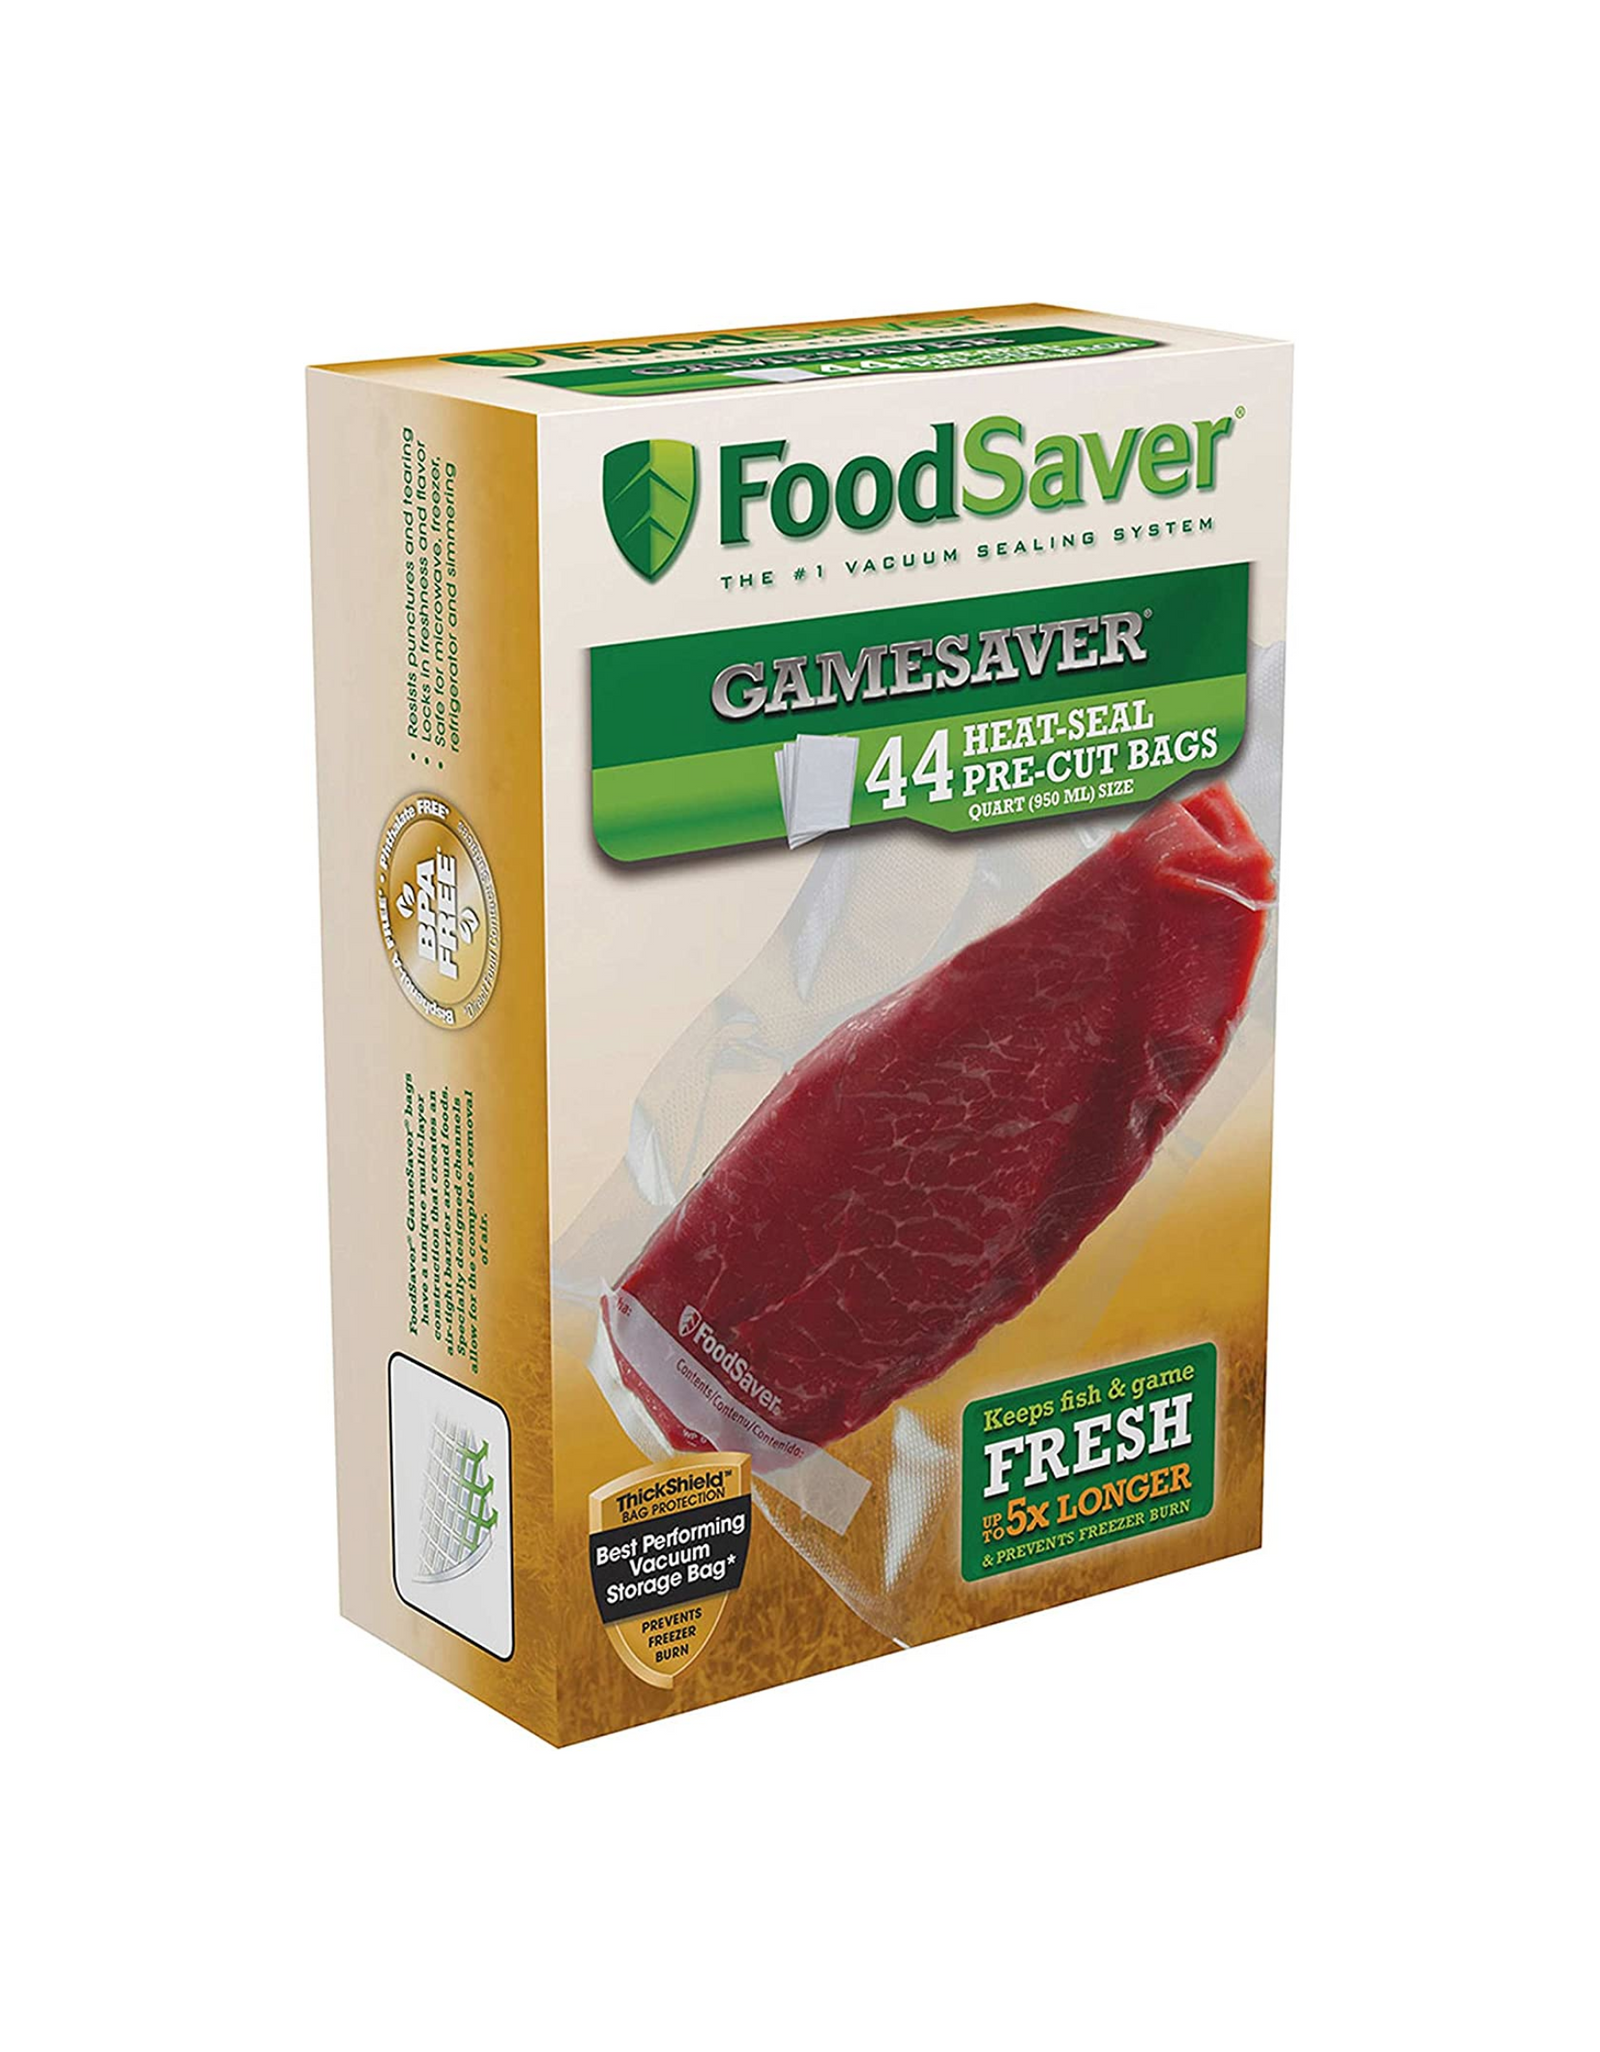 FoodSaver GameSaver 1 Quart Vacuum Heat-Seal Pre-Cut Bags, 44 Ct